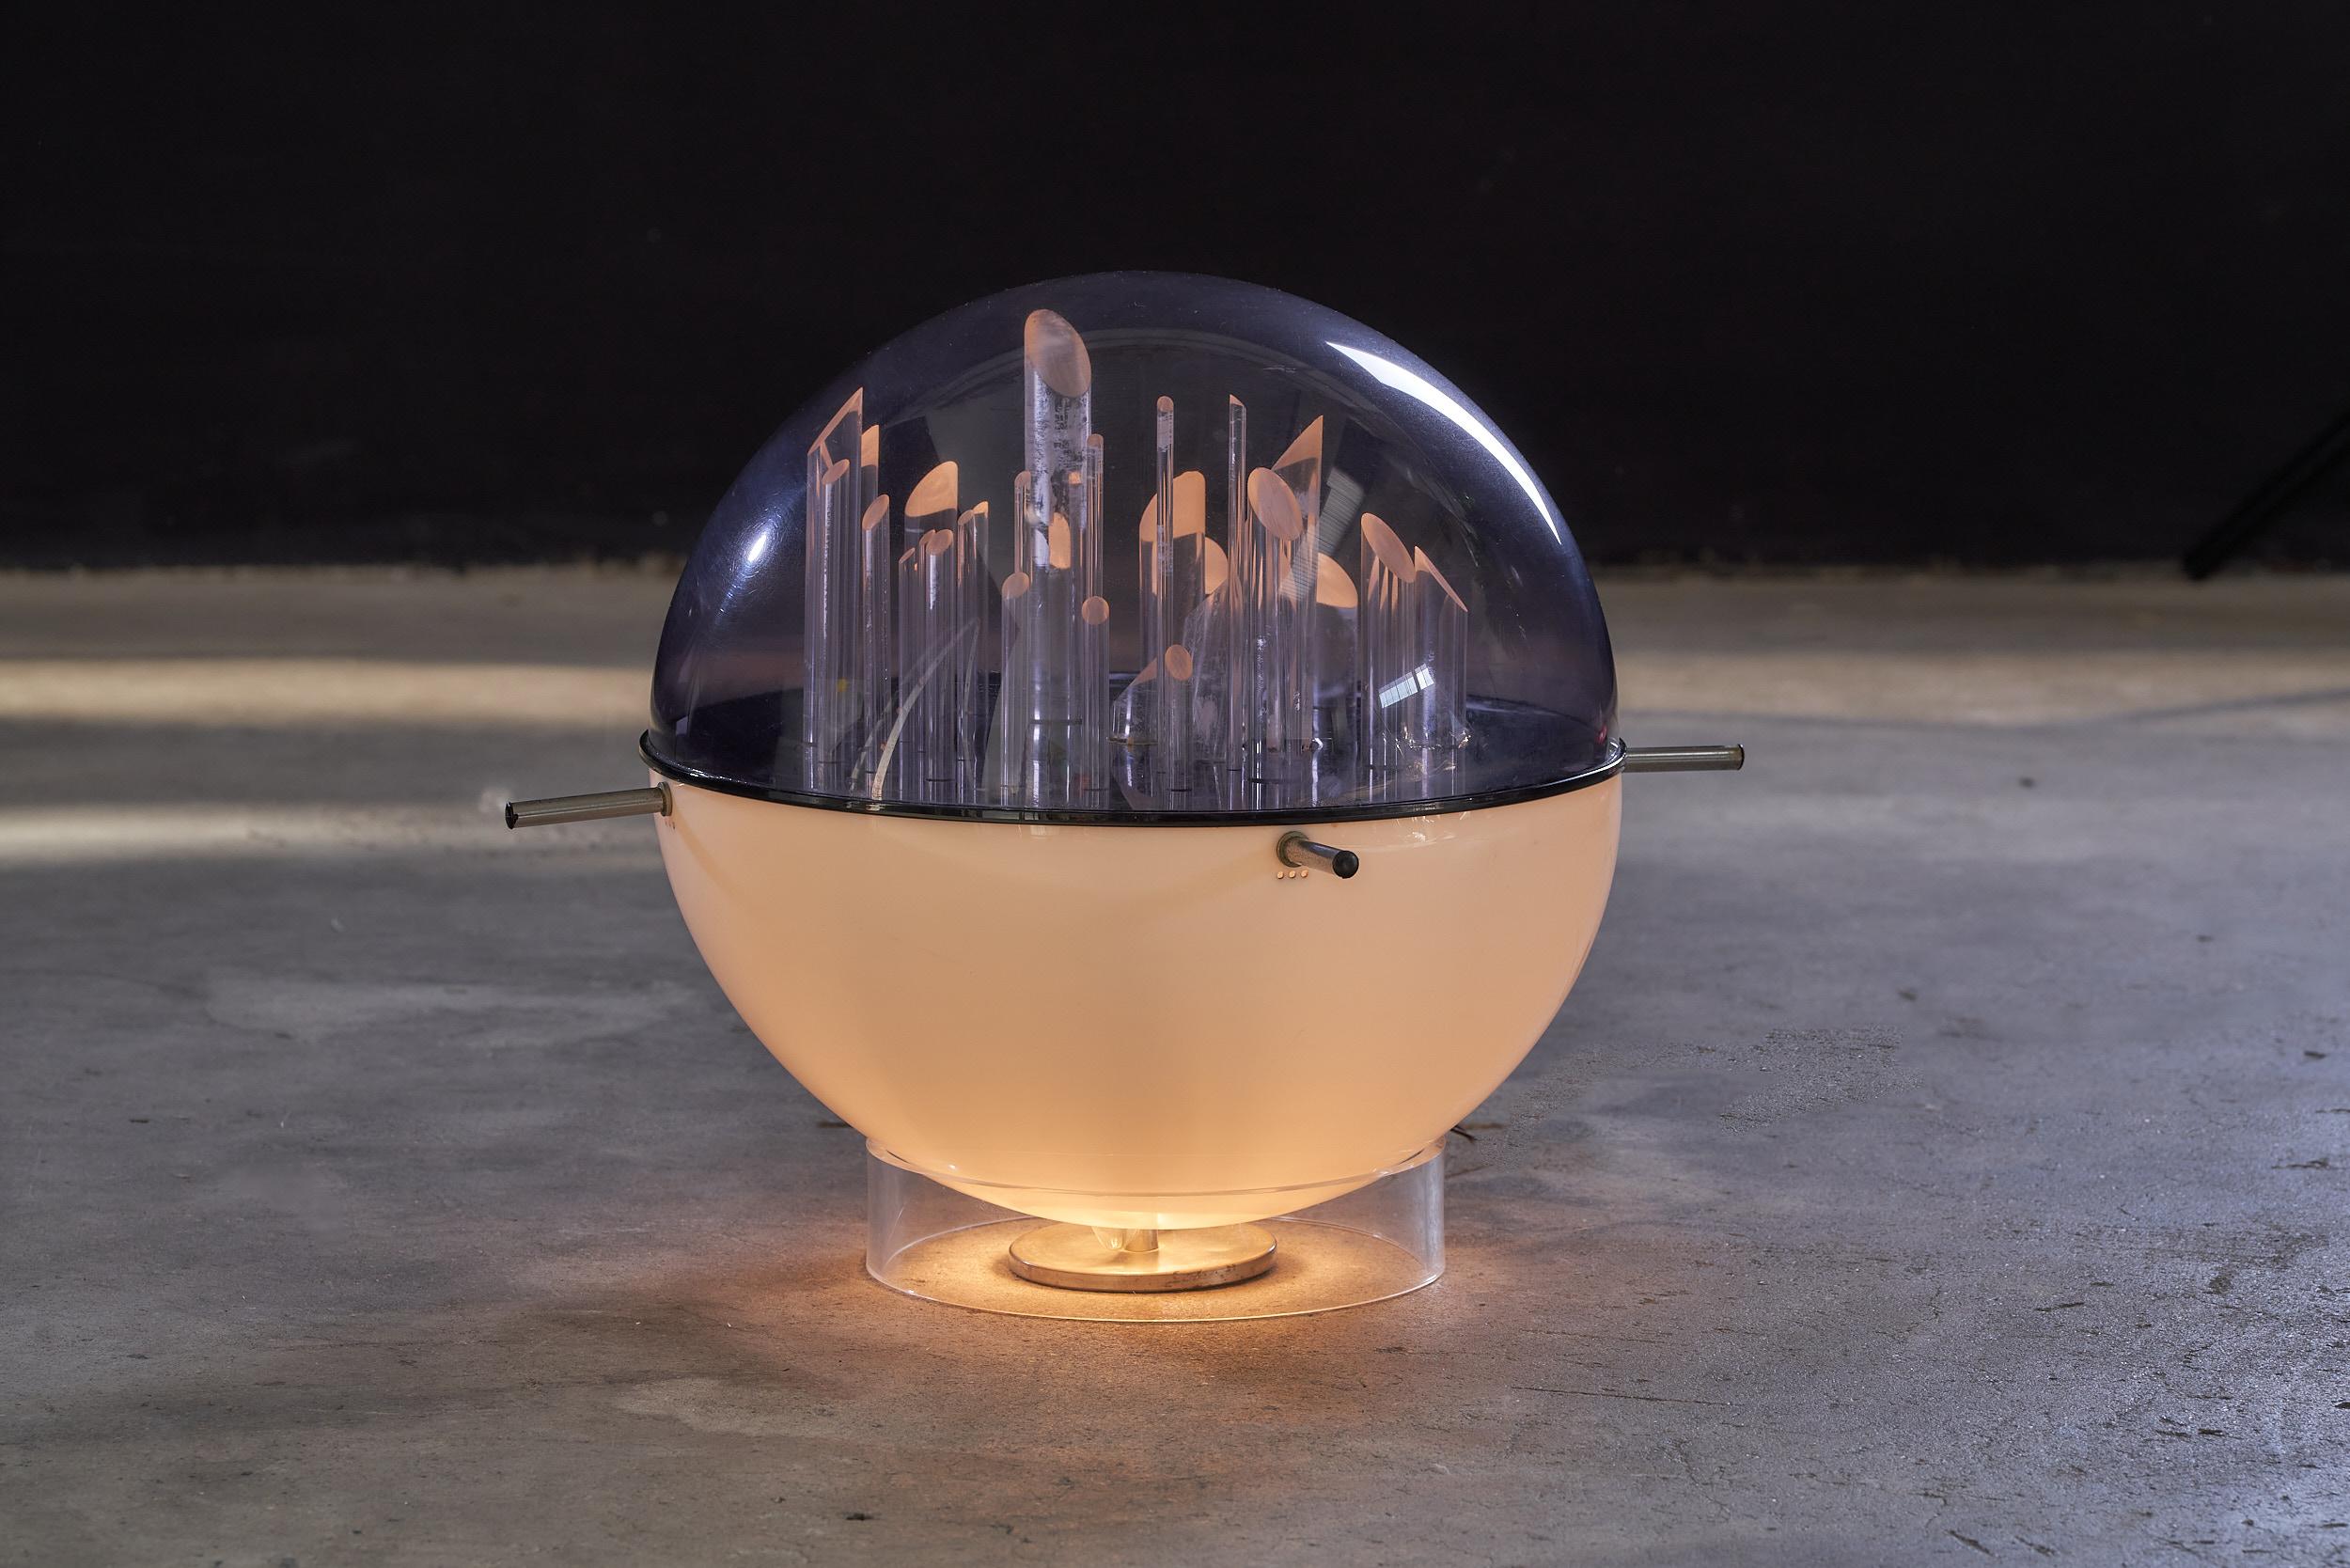 Die italienische Space-Age-Acrylglas-Skulptur-Lampe von Gaetano Missaglia aus den 1970er Jahren ist ein atemberaubendes Stück Beleuchtungsdesign, das die Essenz der Space-Age-Ära einfängt. Diese von dem berühmten italienischen Designer Gaetano